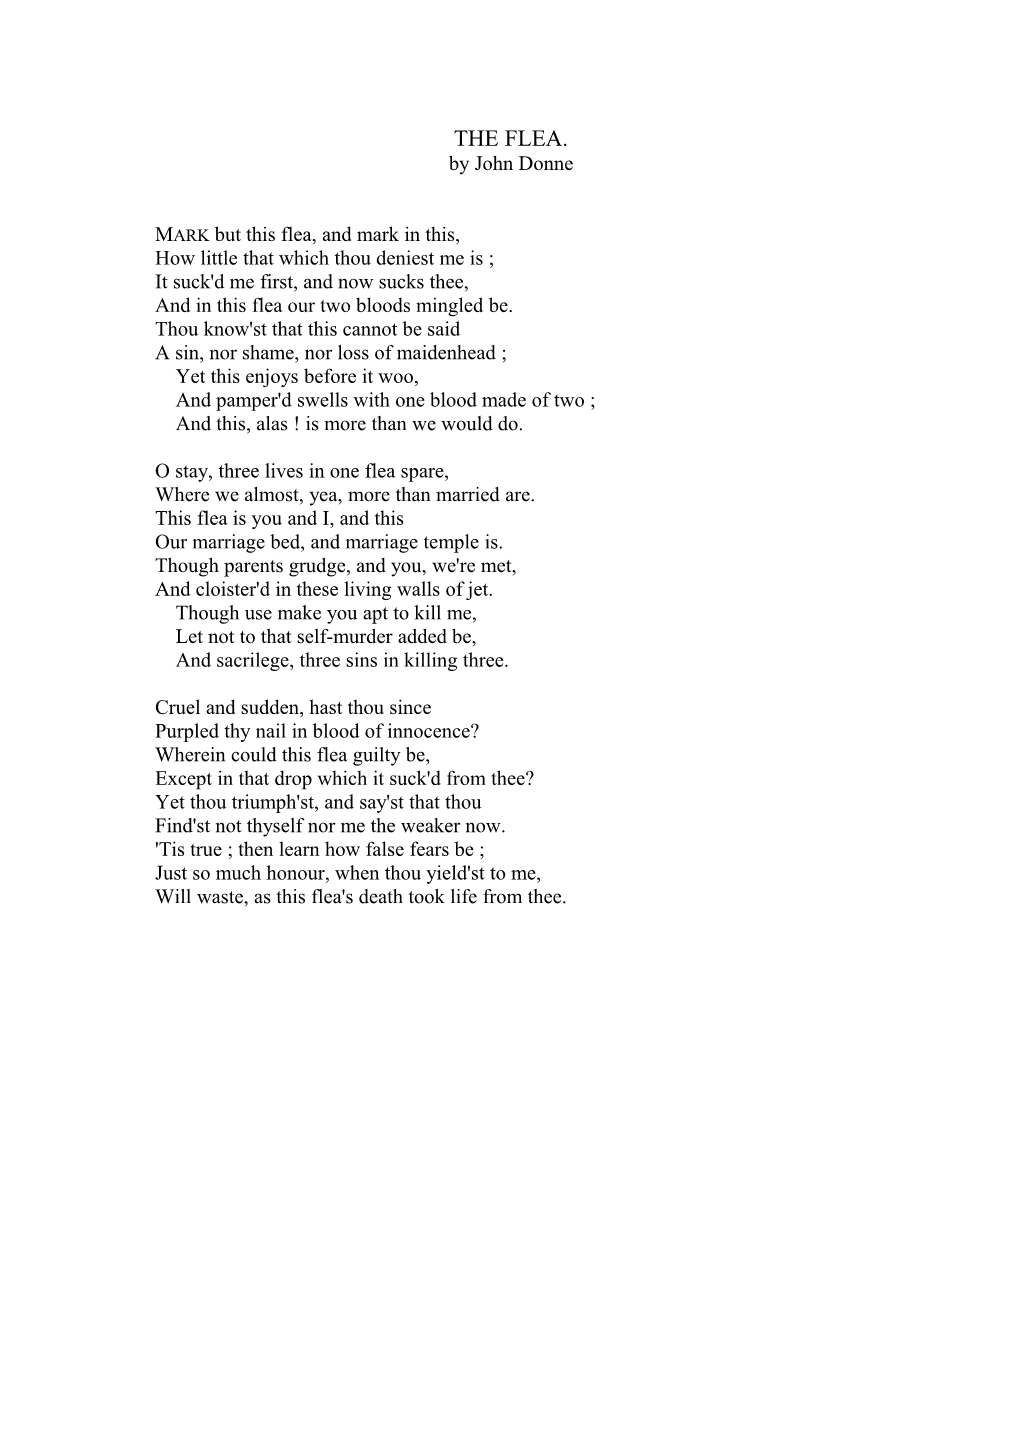 THE FLEA. by John Donne